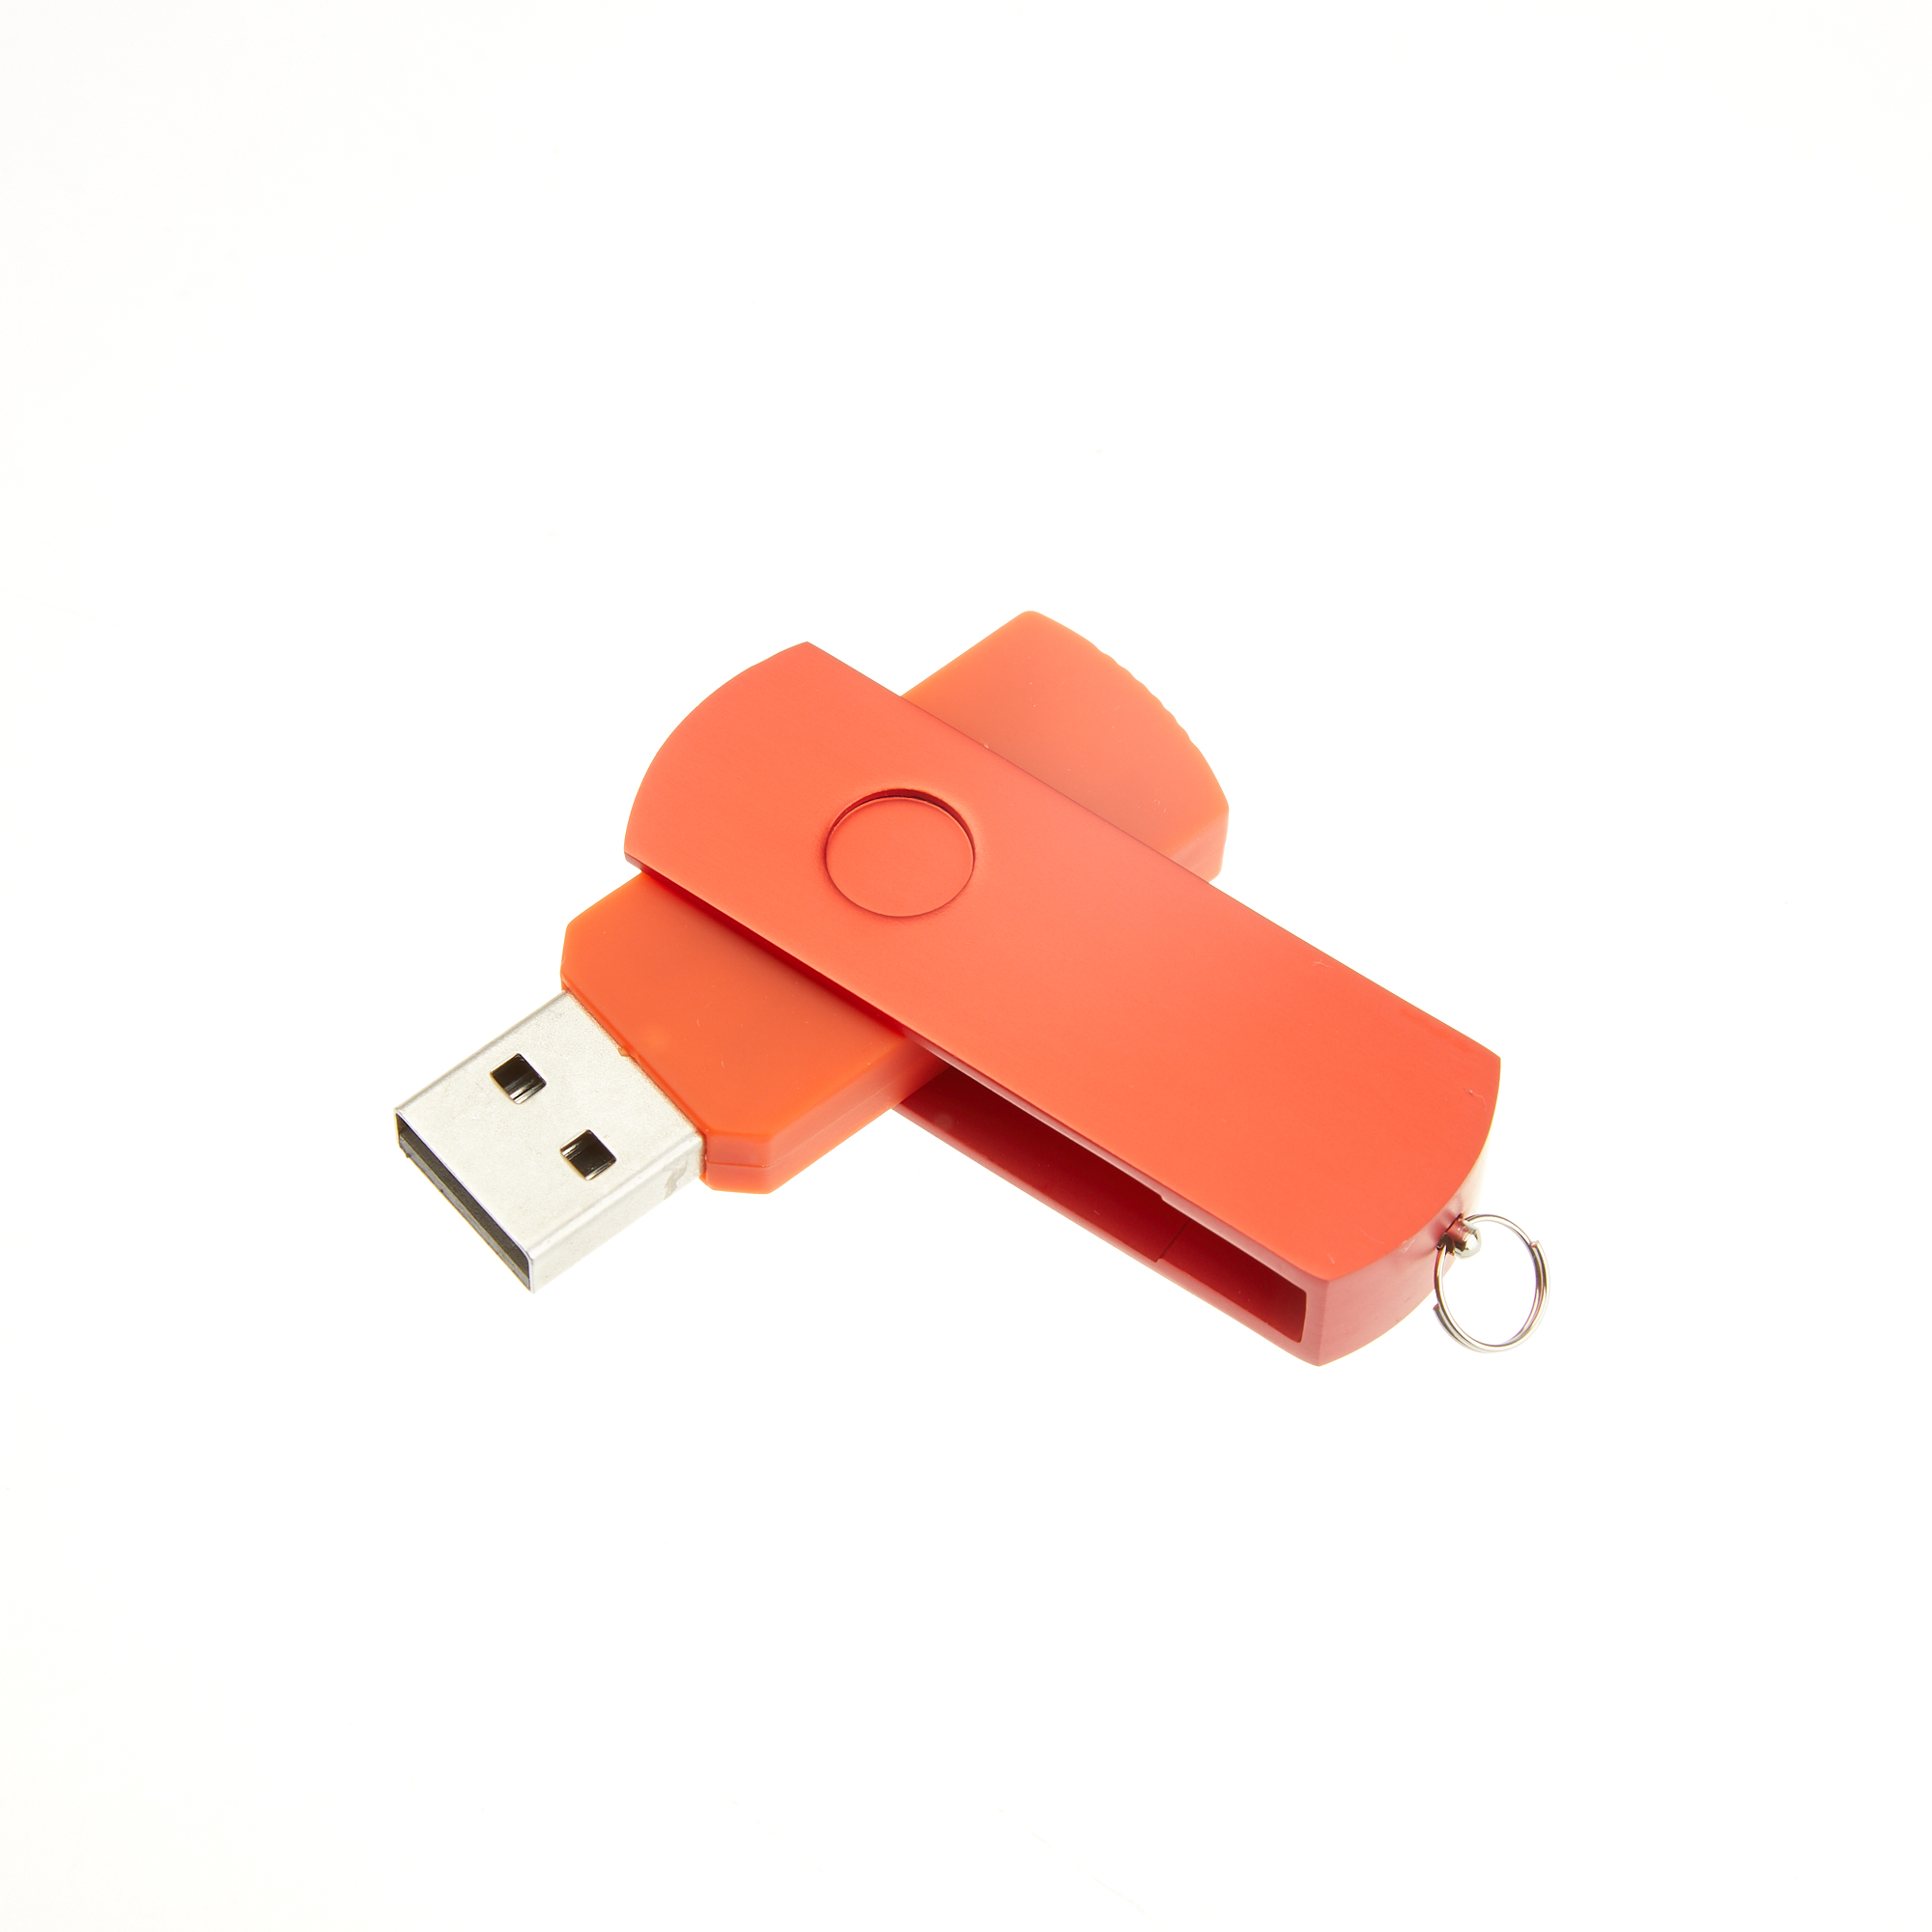 Цветная скоба для USB-флешки модель 107, цвет красный